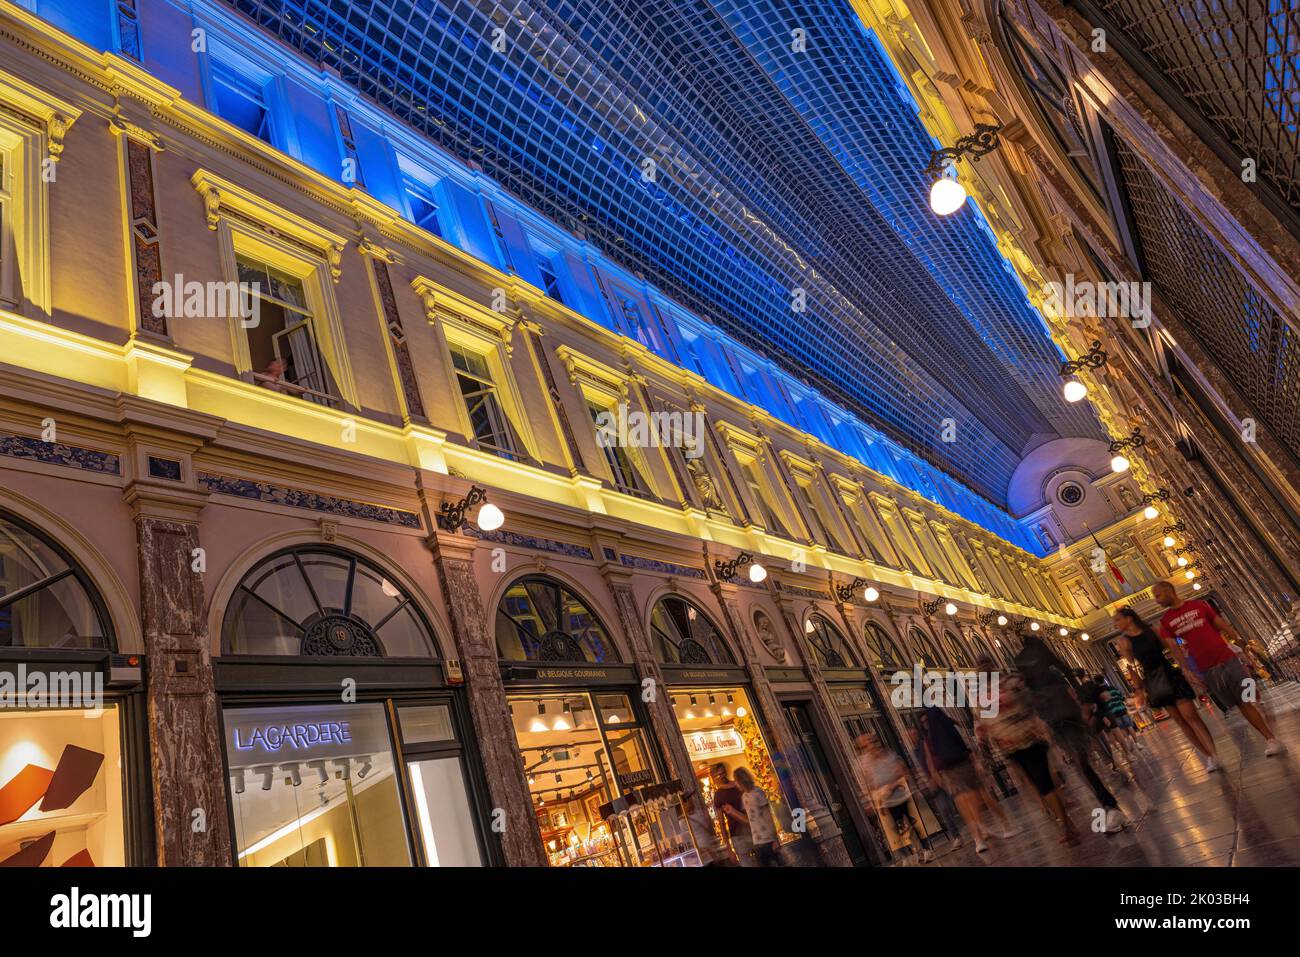 Galleries de la Reine, illuminated in the colors of the Ukrainian flag. Brussels, Belgium. Stock Photo